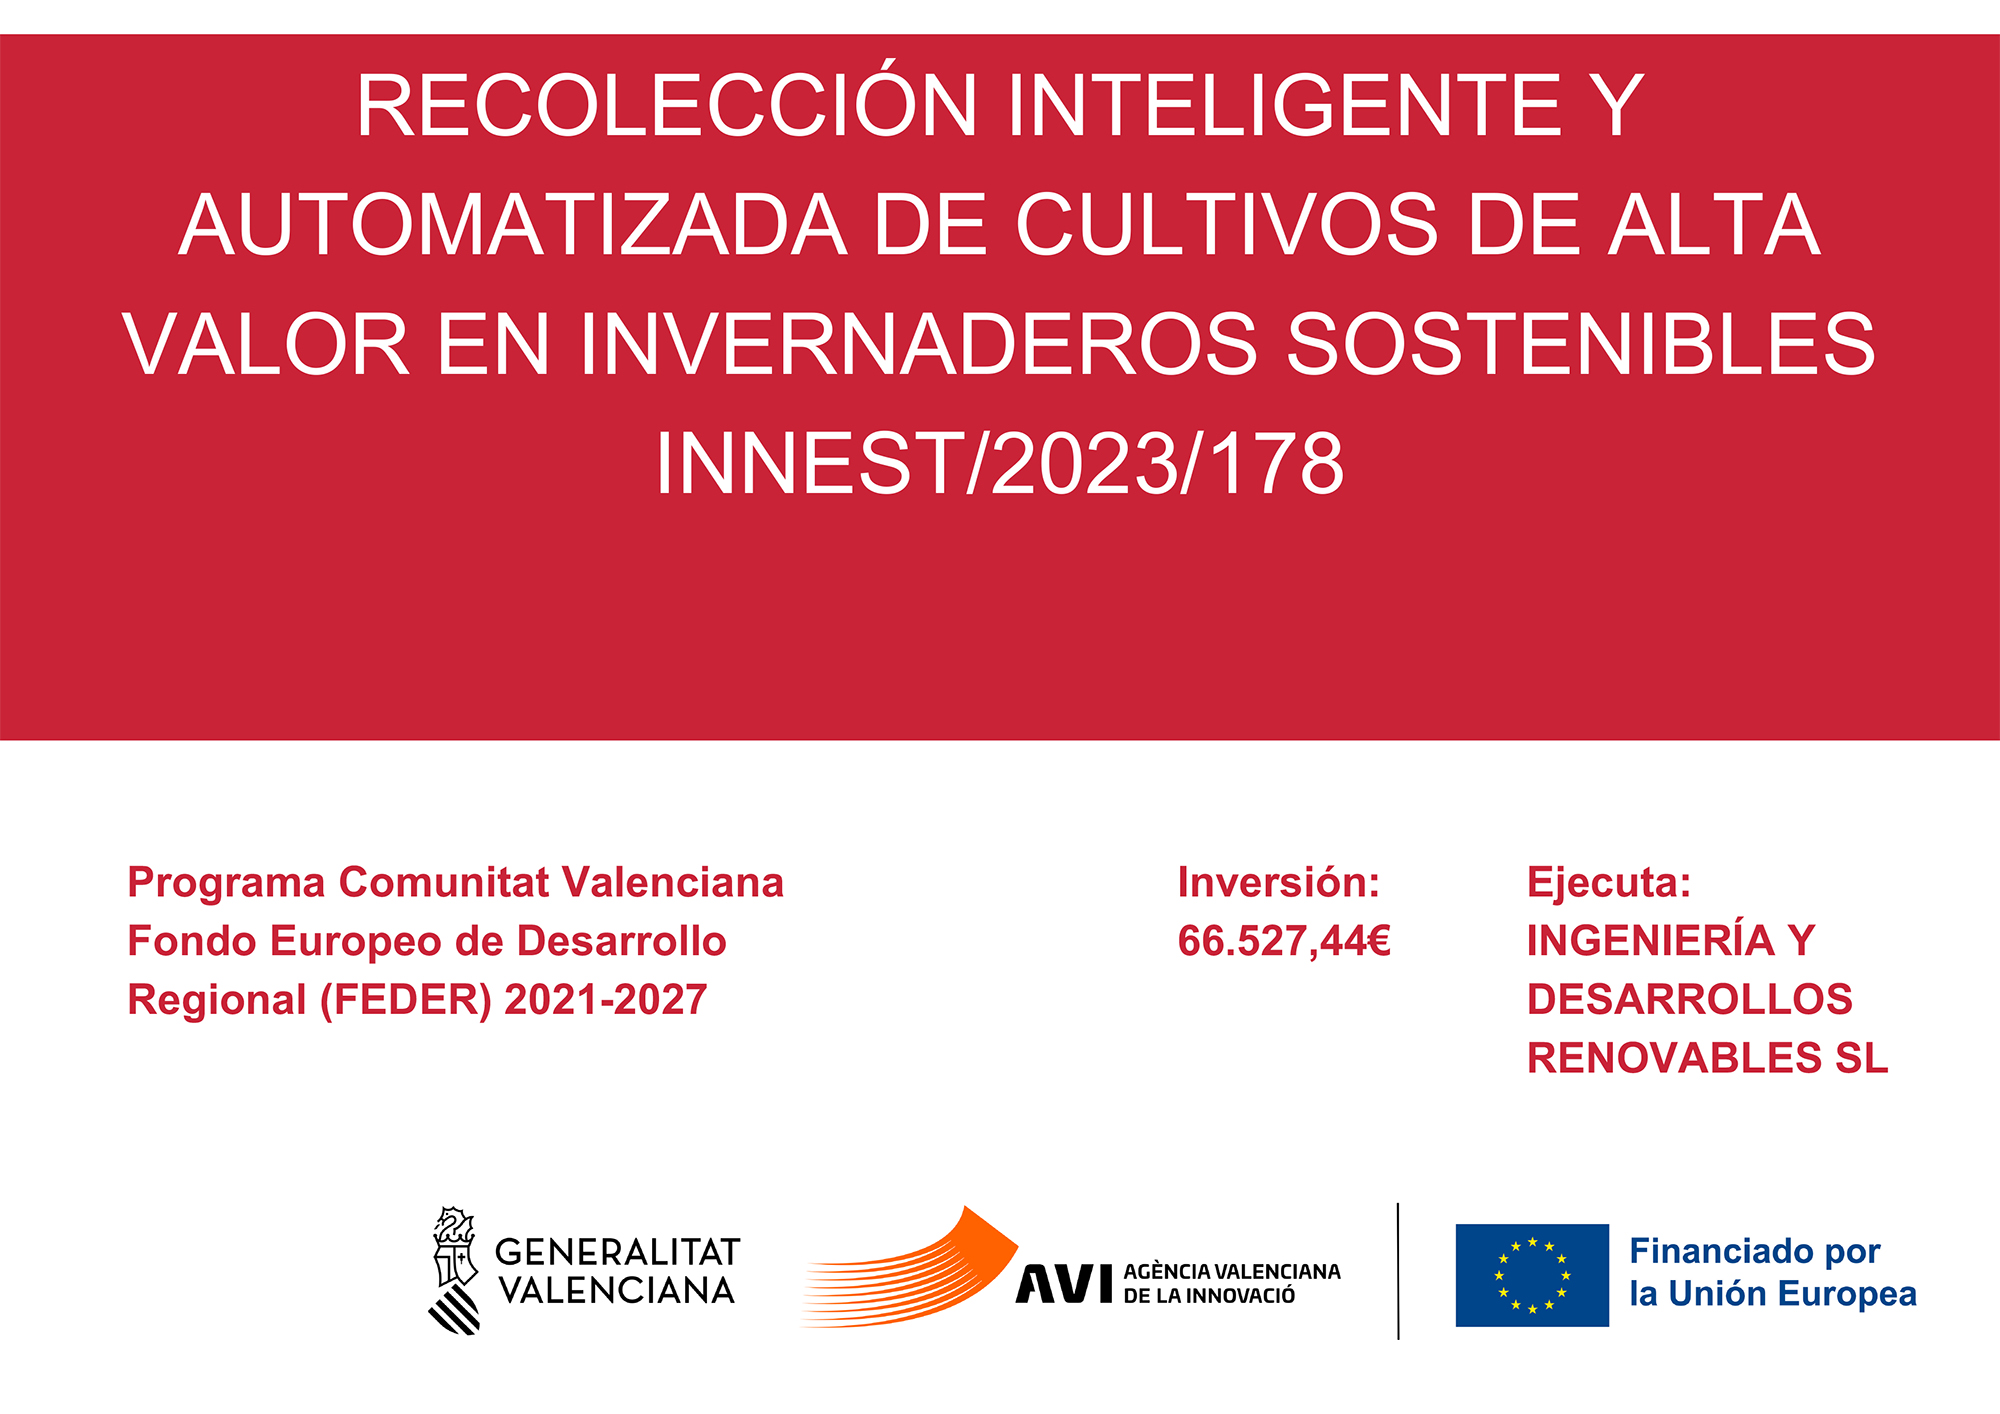 RECOLECCIÓN INTELIGENTE INVERNADEROS SOSTENIBLES-01